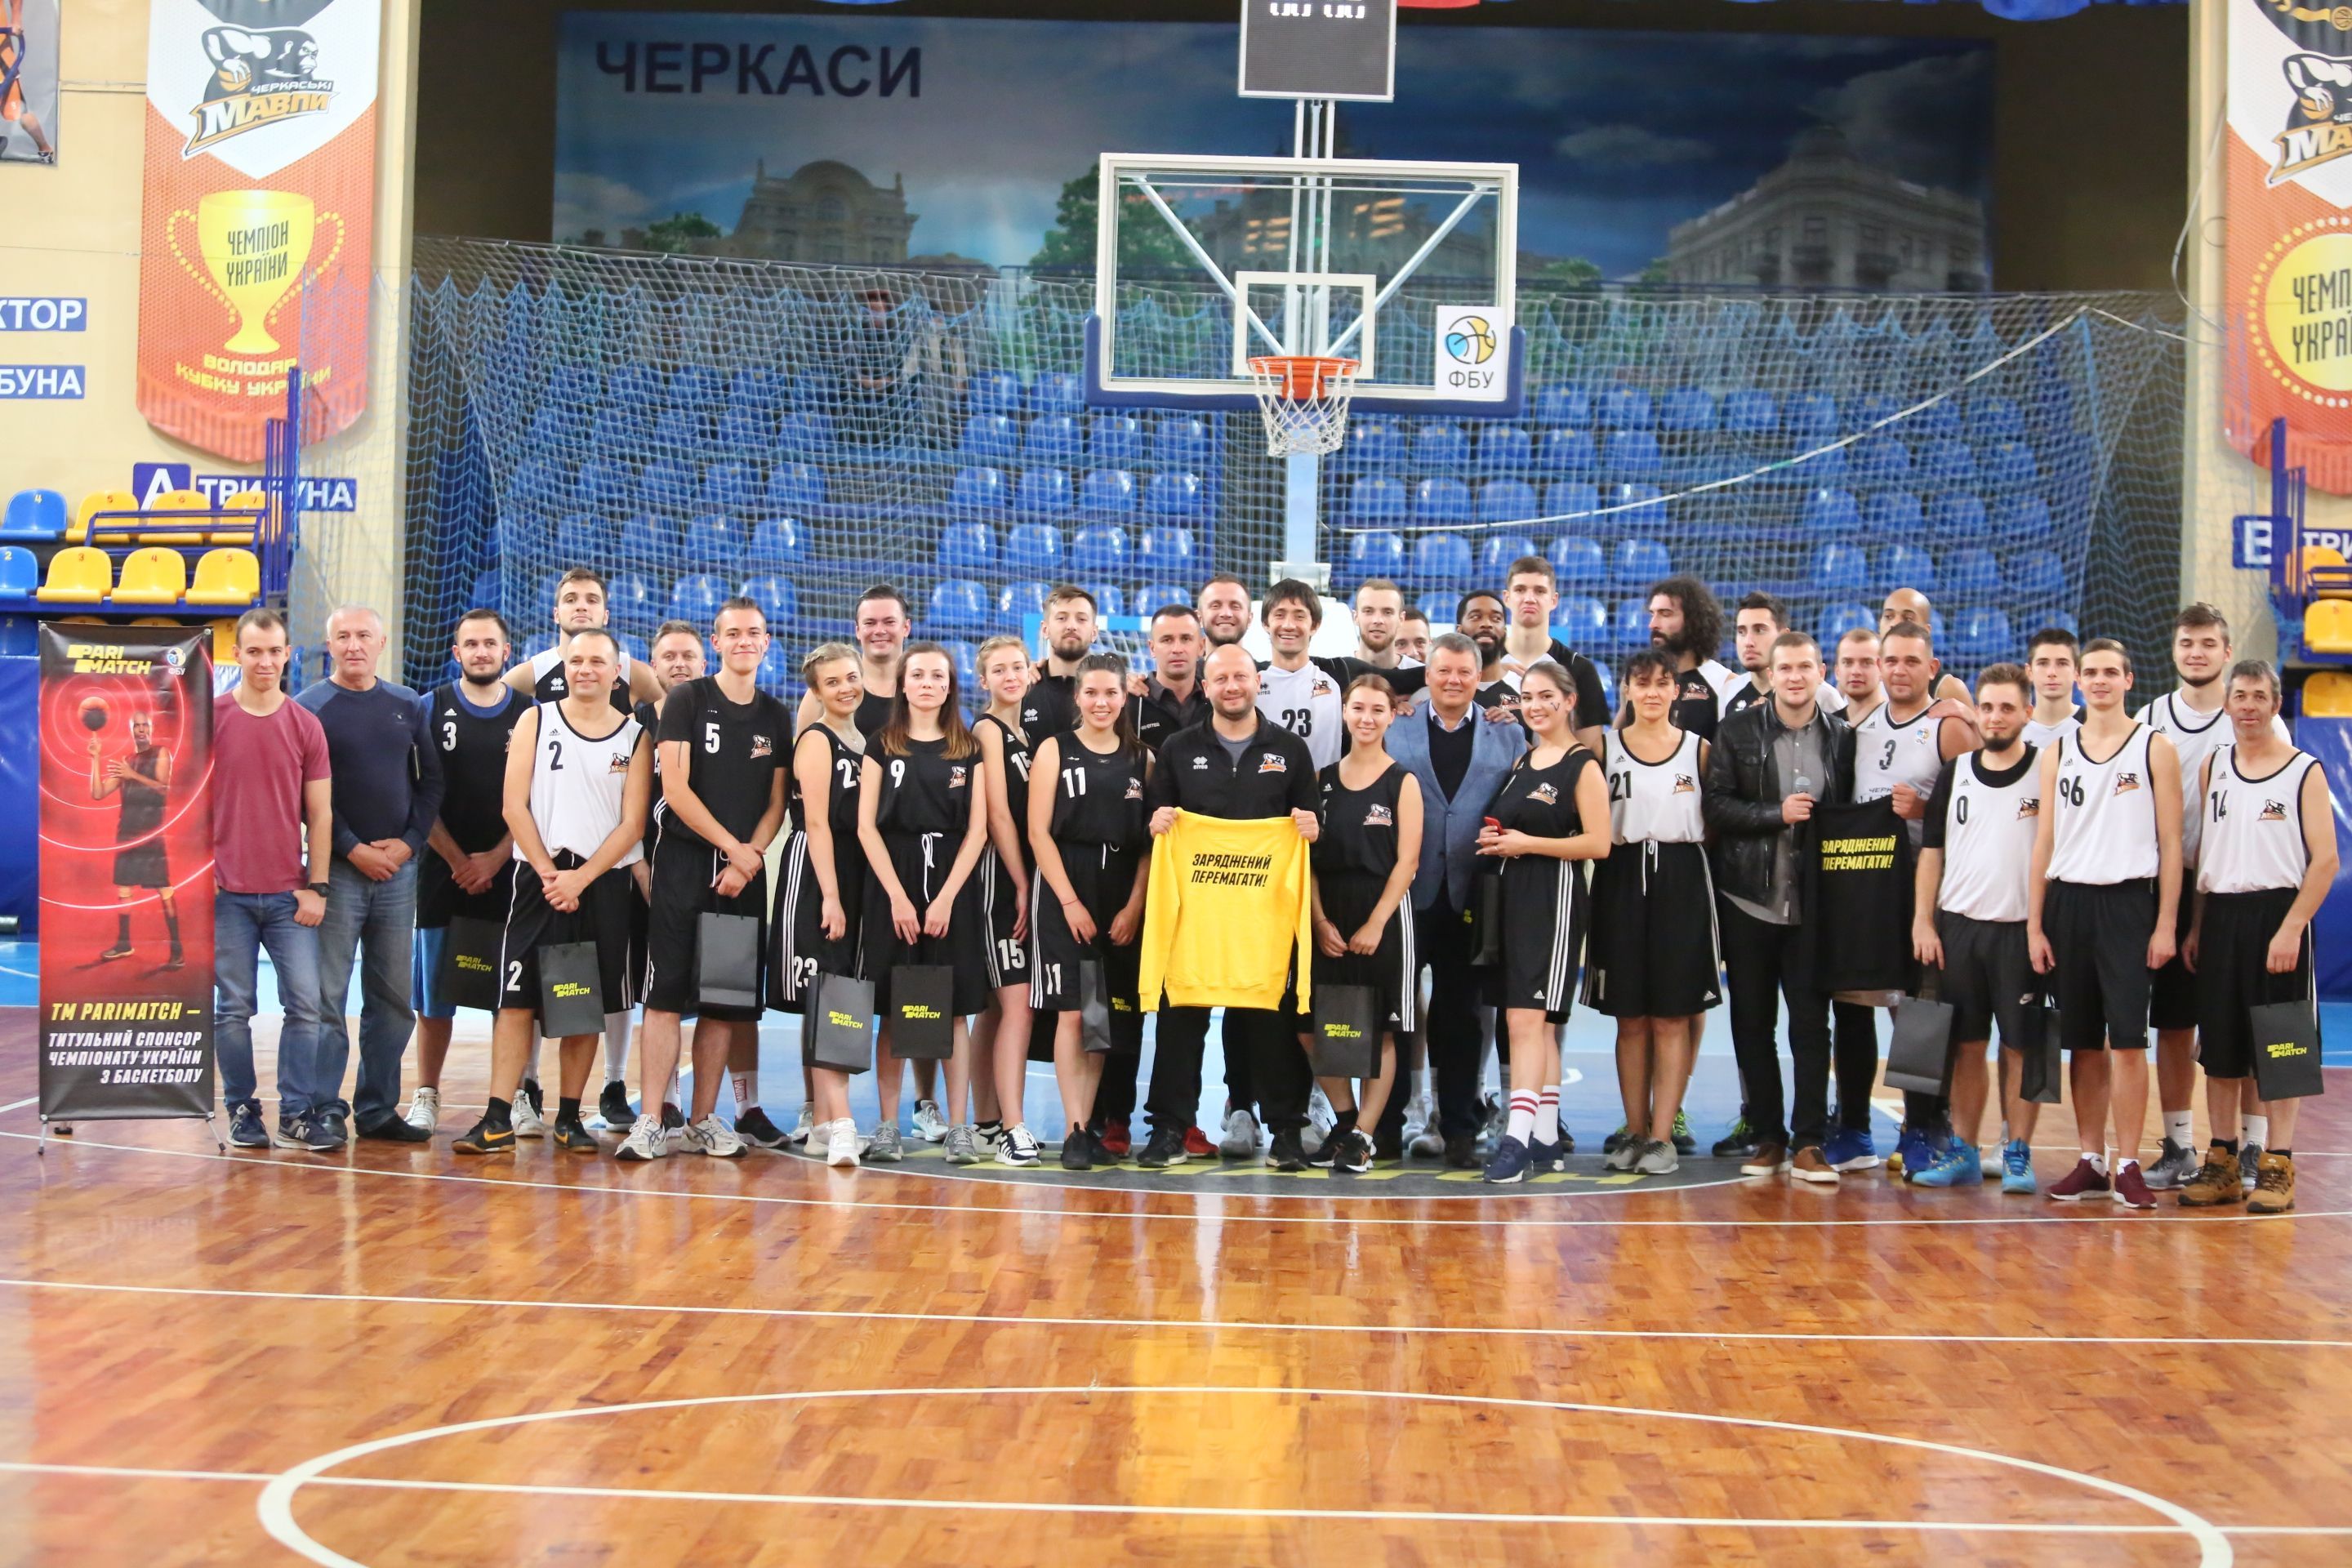 Баскетболисты "Черкасских мавп" провели открытую тренировку с болельщиками